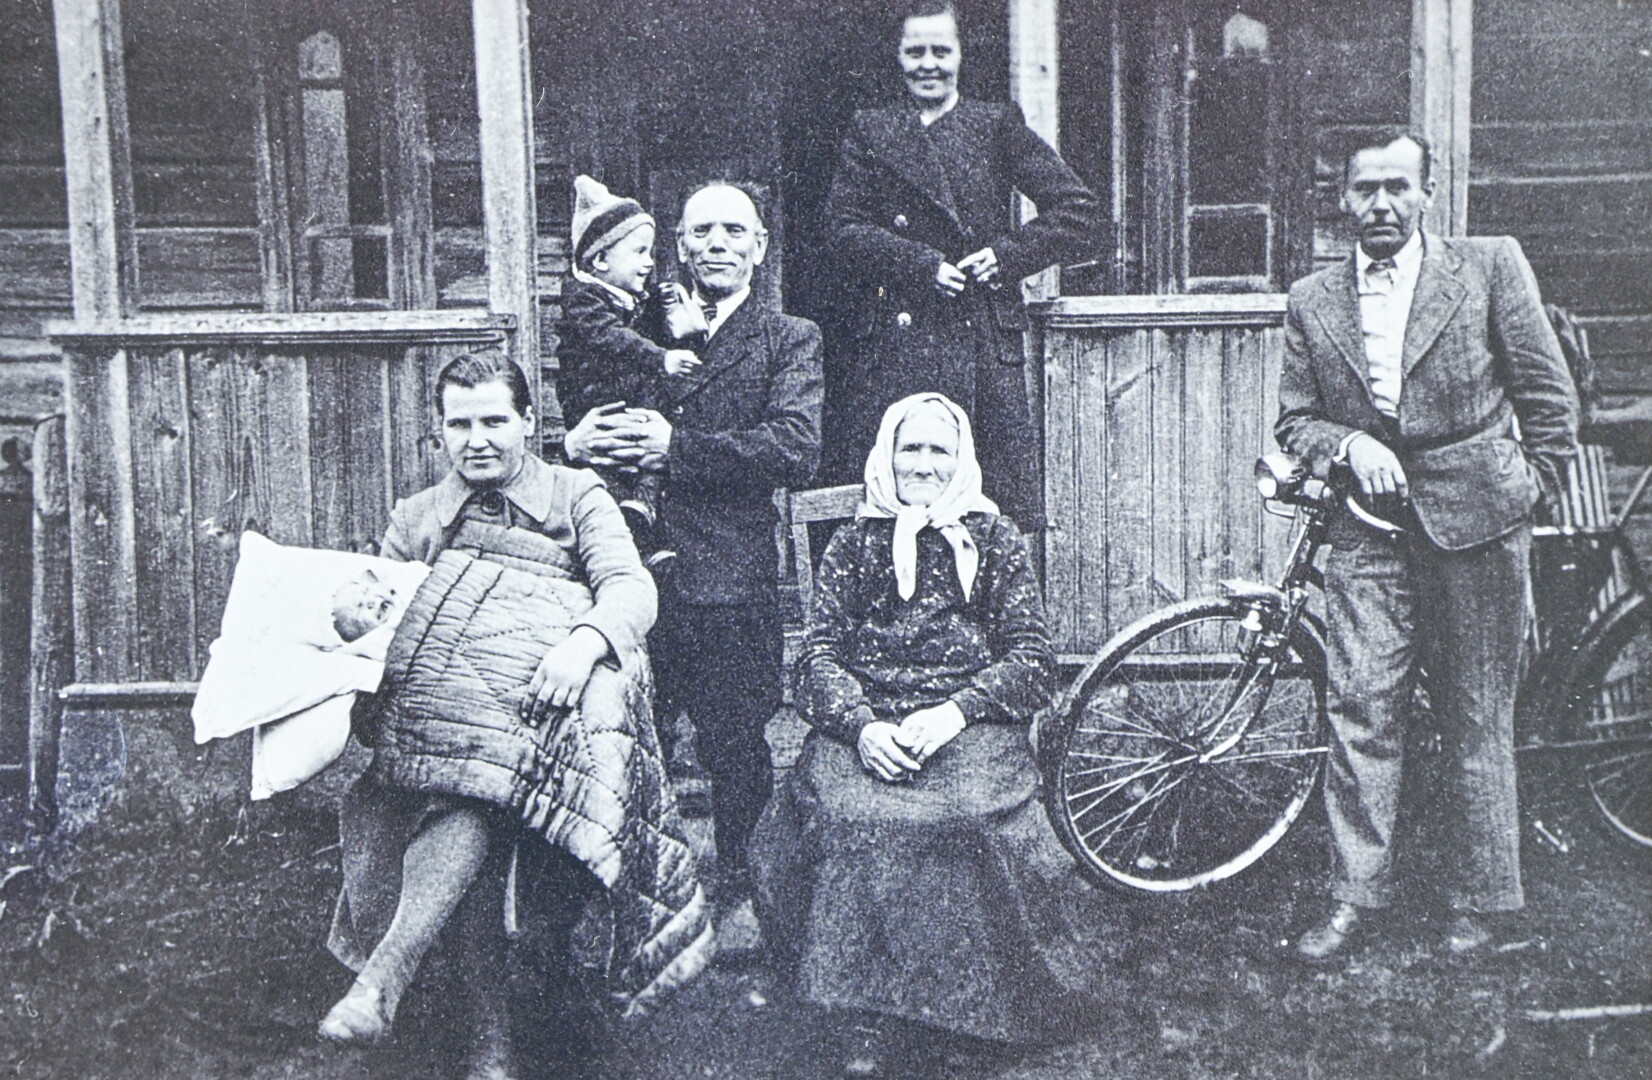 Fotografuodamasi prie gimtosios sodybos Kakuncų kaime 1943-iųjų rugsėjį, Vičinų šeima nenumanė, kas laukia po metų. Pirmoje eilėje iš kairės sėdi mama Apolonija Vičinienė su sūnumi Vidučiu, močiutė Barbora Vičinienė, stovi tėvas Jonas Vičinas su Algimantu ant rankų. ASMENINIO ARCHYVO nuotr.